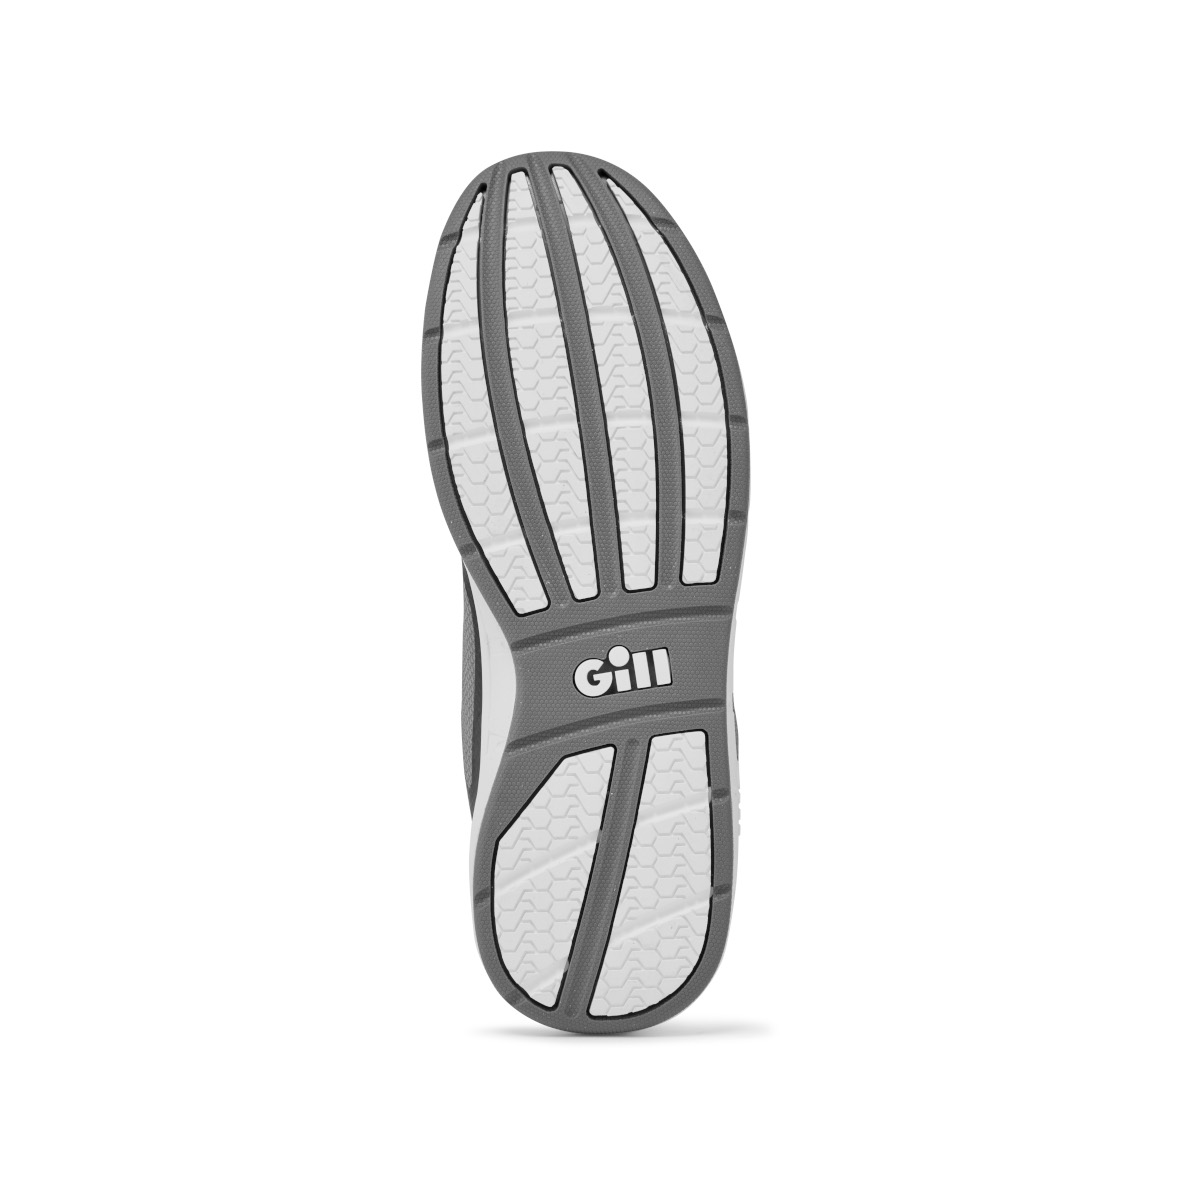 Gill Mawgan chaussure de voile, unisexe - noir/gris, pointure 44